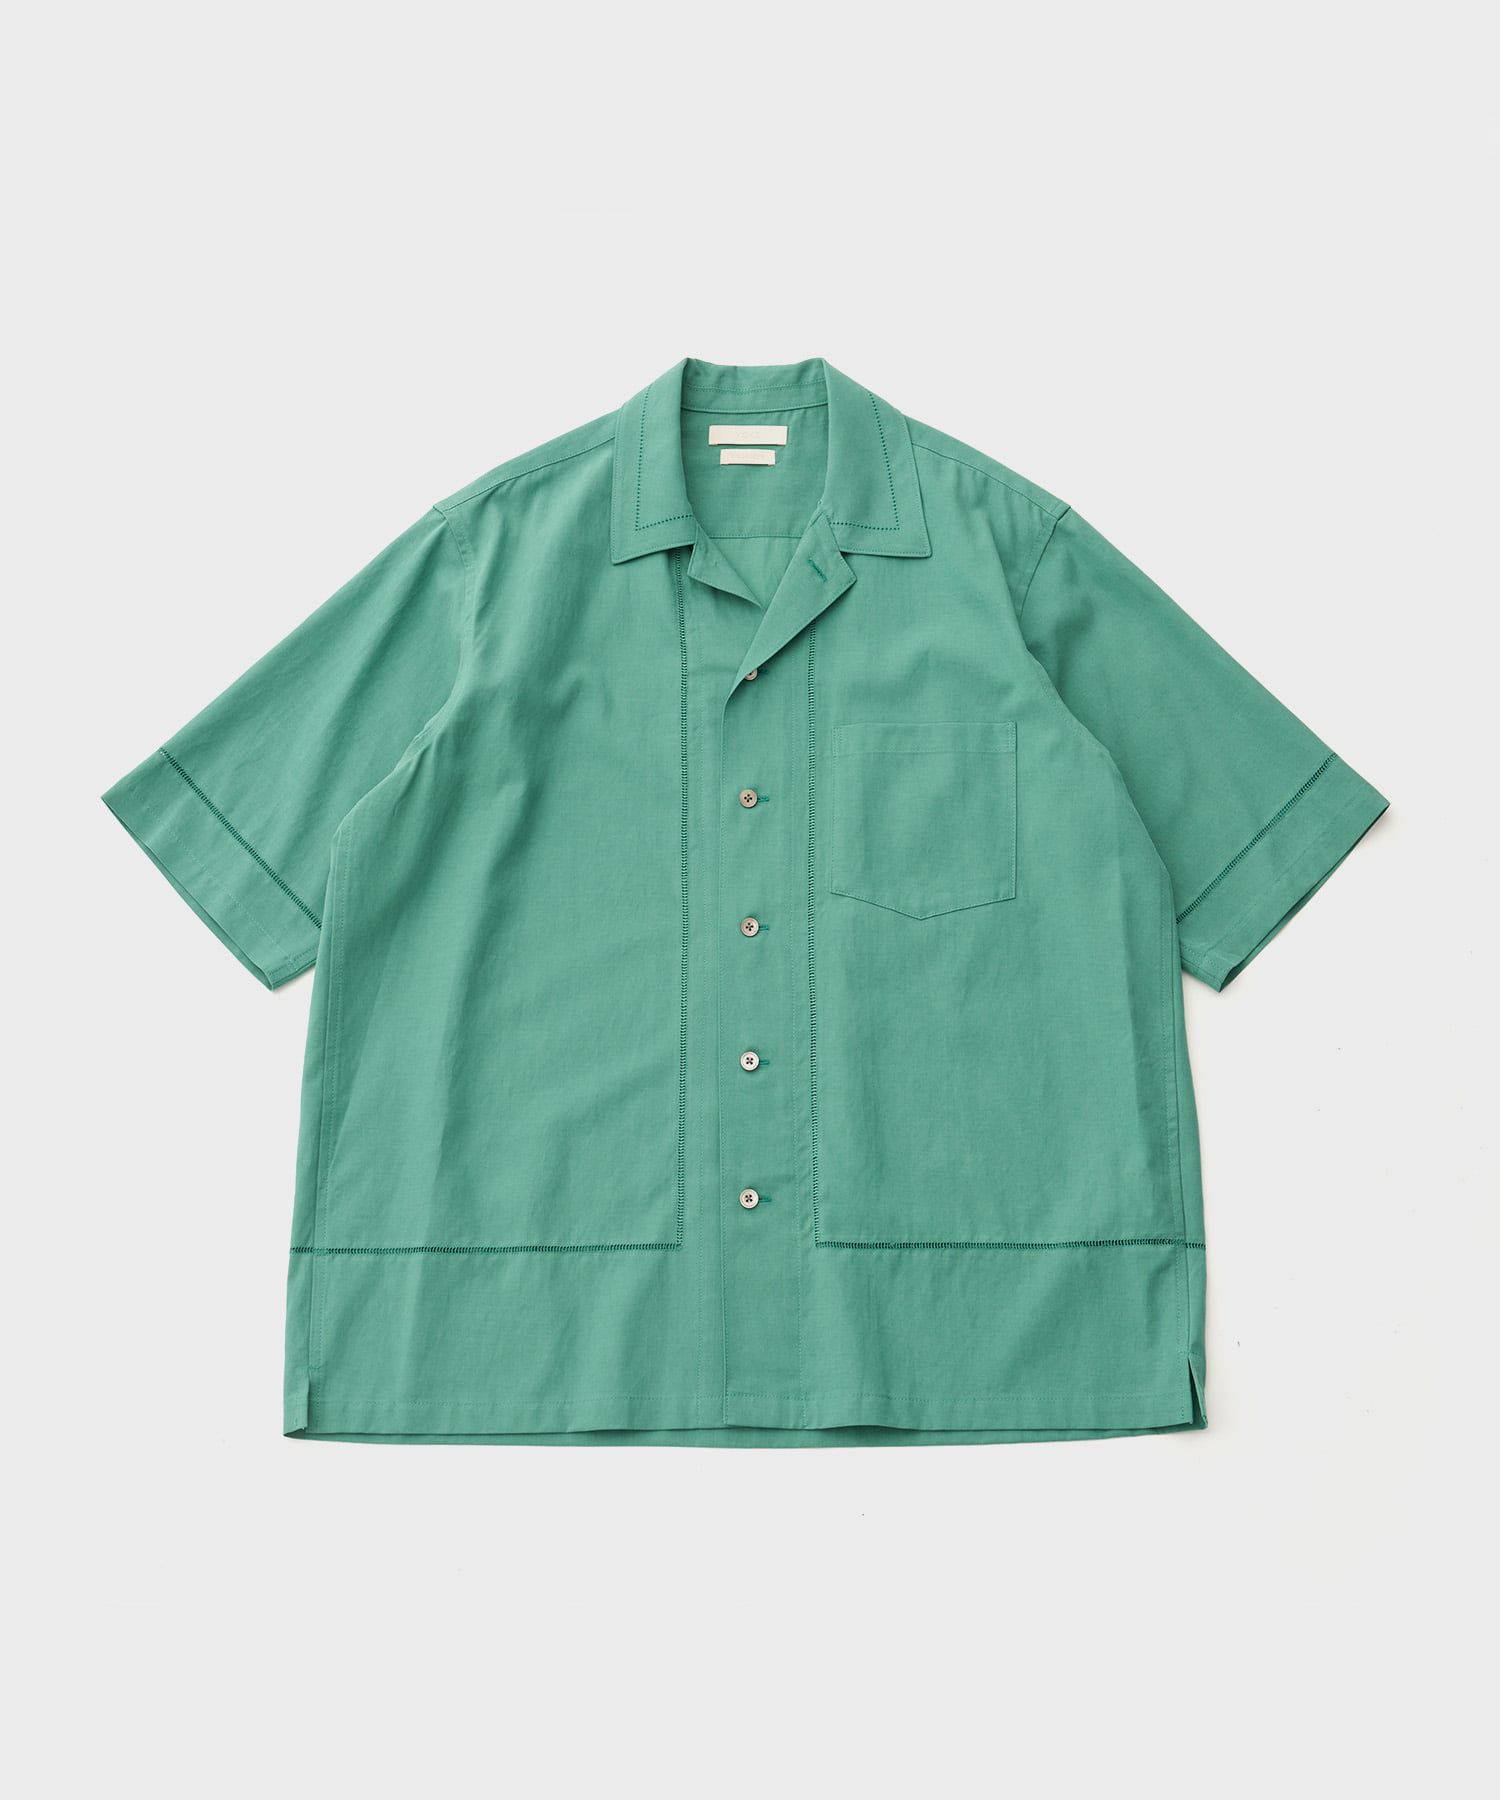 Embroidery Open Collar Shirt (Jade Green)